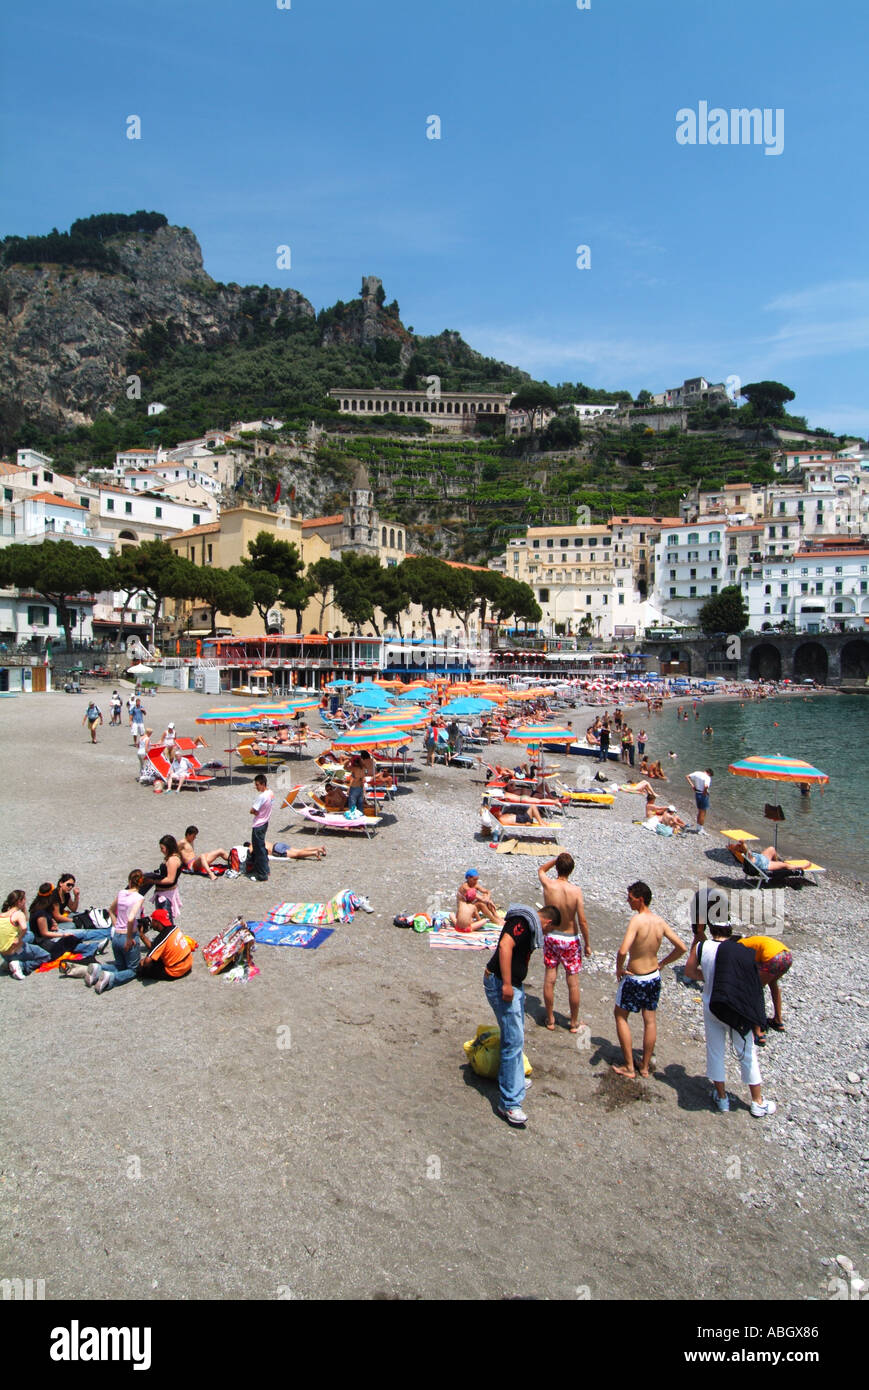 Turisti e gente del posto estate prendere il sole in pietra alla fine della spiaggia di Amalfi, vista sulla spiaggia costiera lungo il bordo delle acque fino agli ombrelloni Campania Salerno Italia e UE Foto Stock